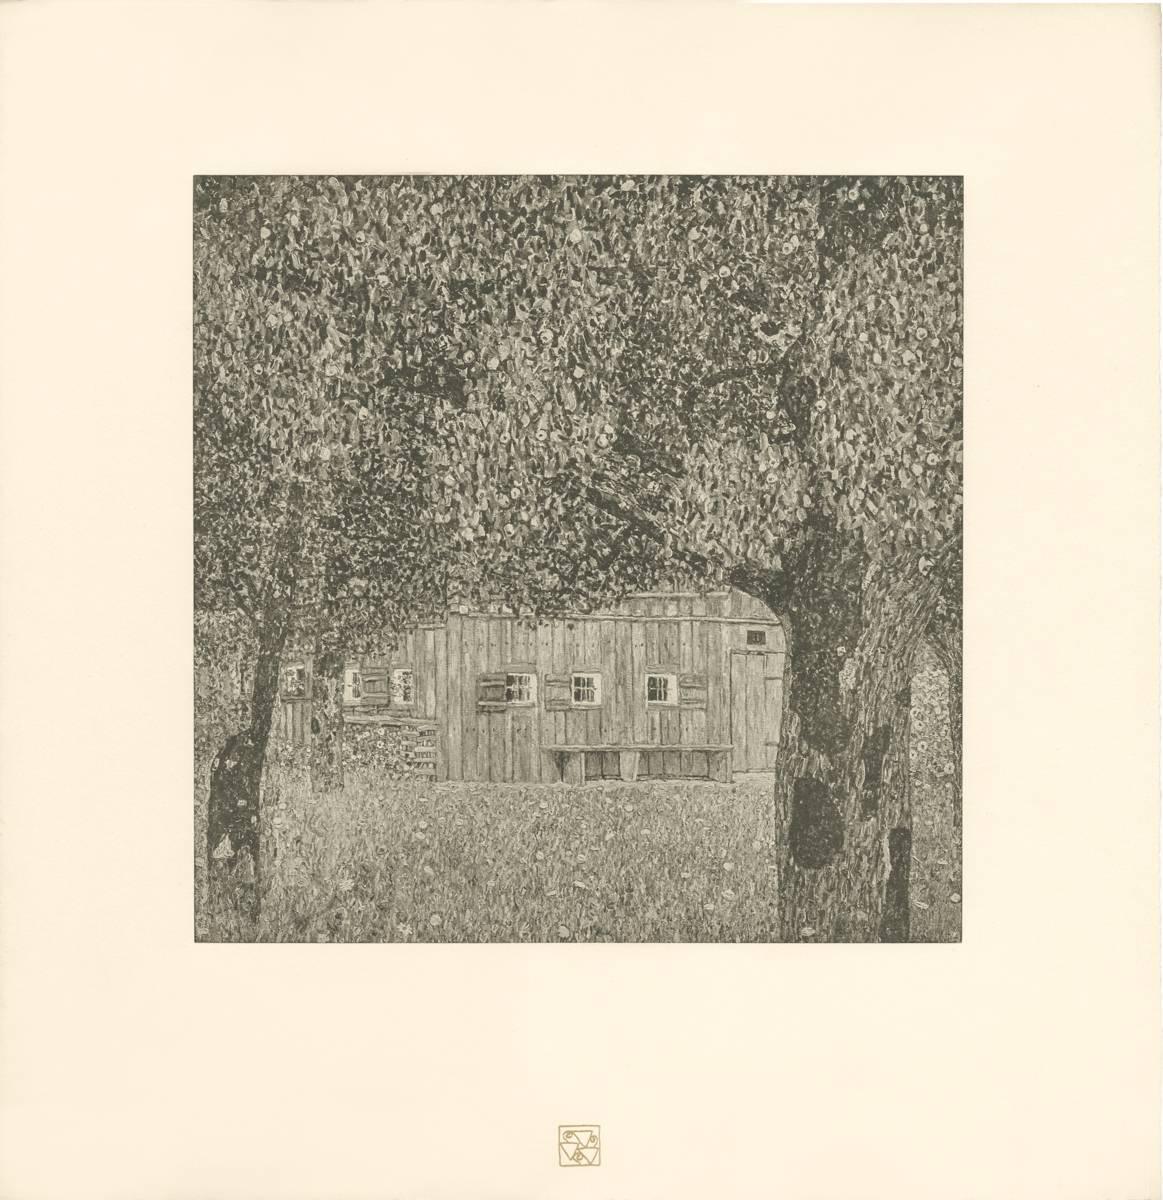 Gustav Klimt & K.K. Hof-und Staatsdruckerei Landscape Print - H.O. Miethke Das Werk folio "Farm House in Buchberg" collotype print